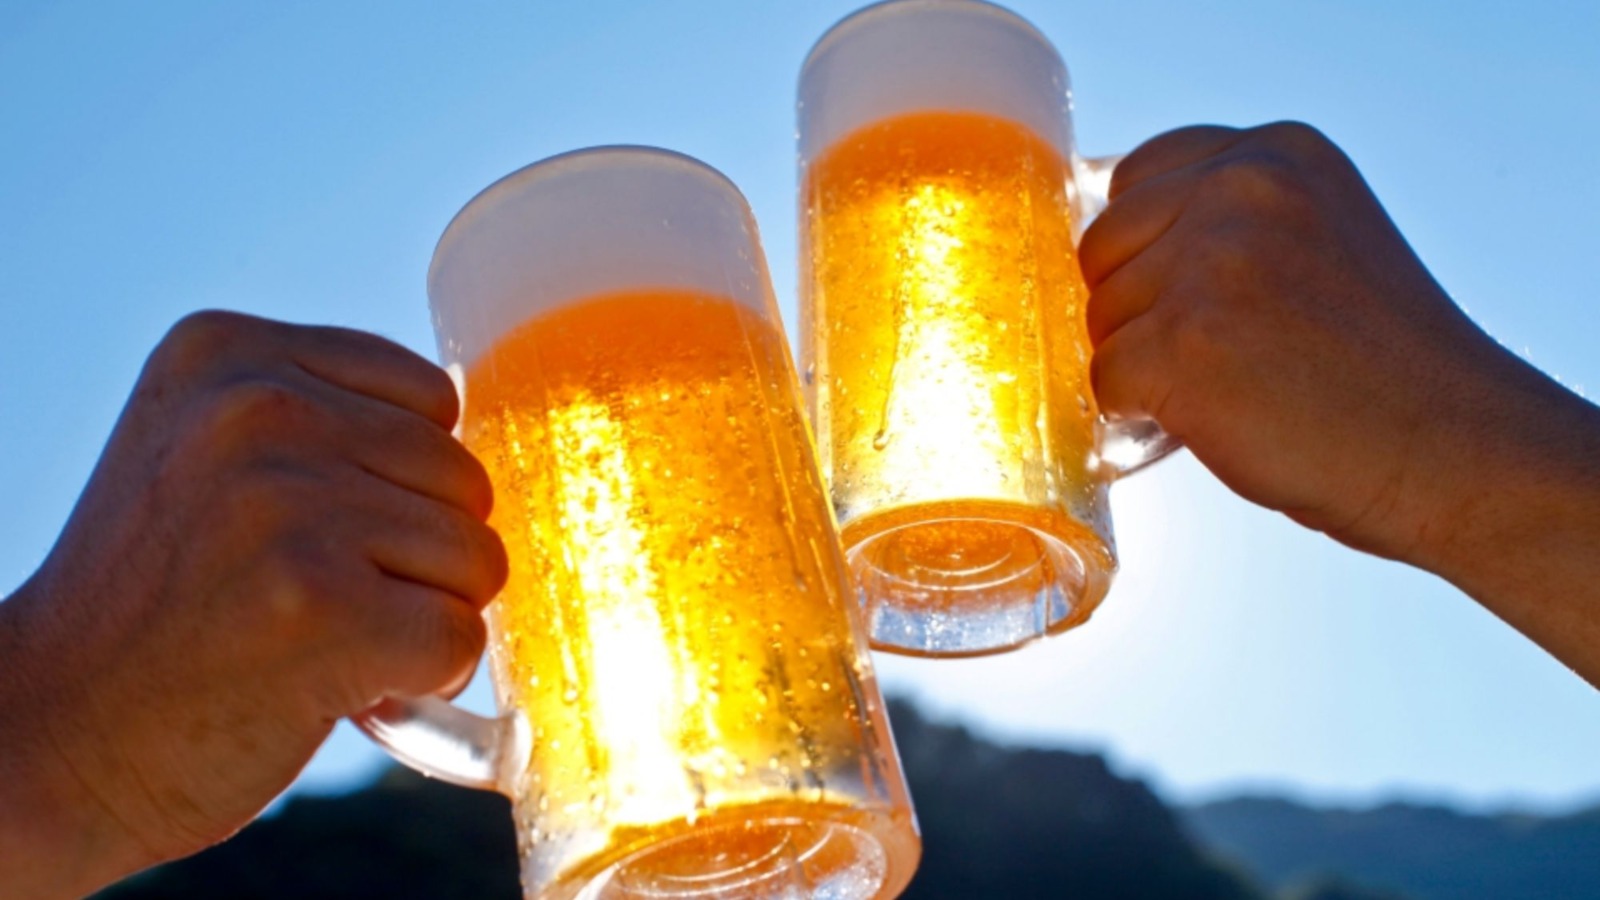 Co stanie się z Twoim organizmem, jeśli codziennie będziesz pił piwo?